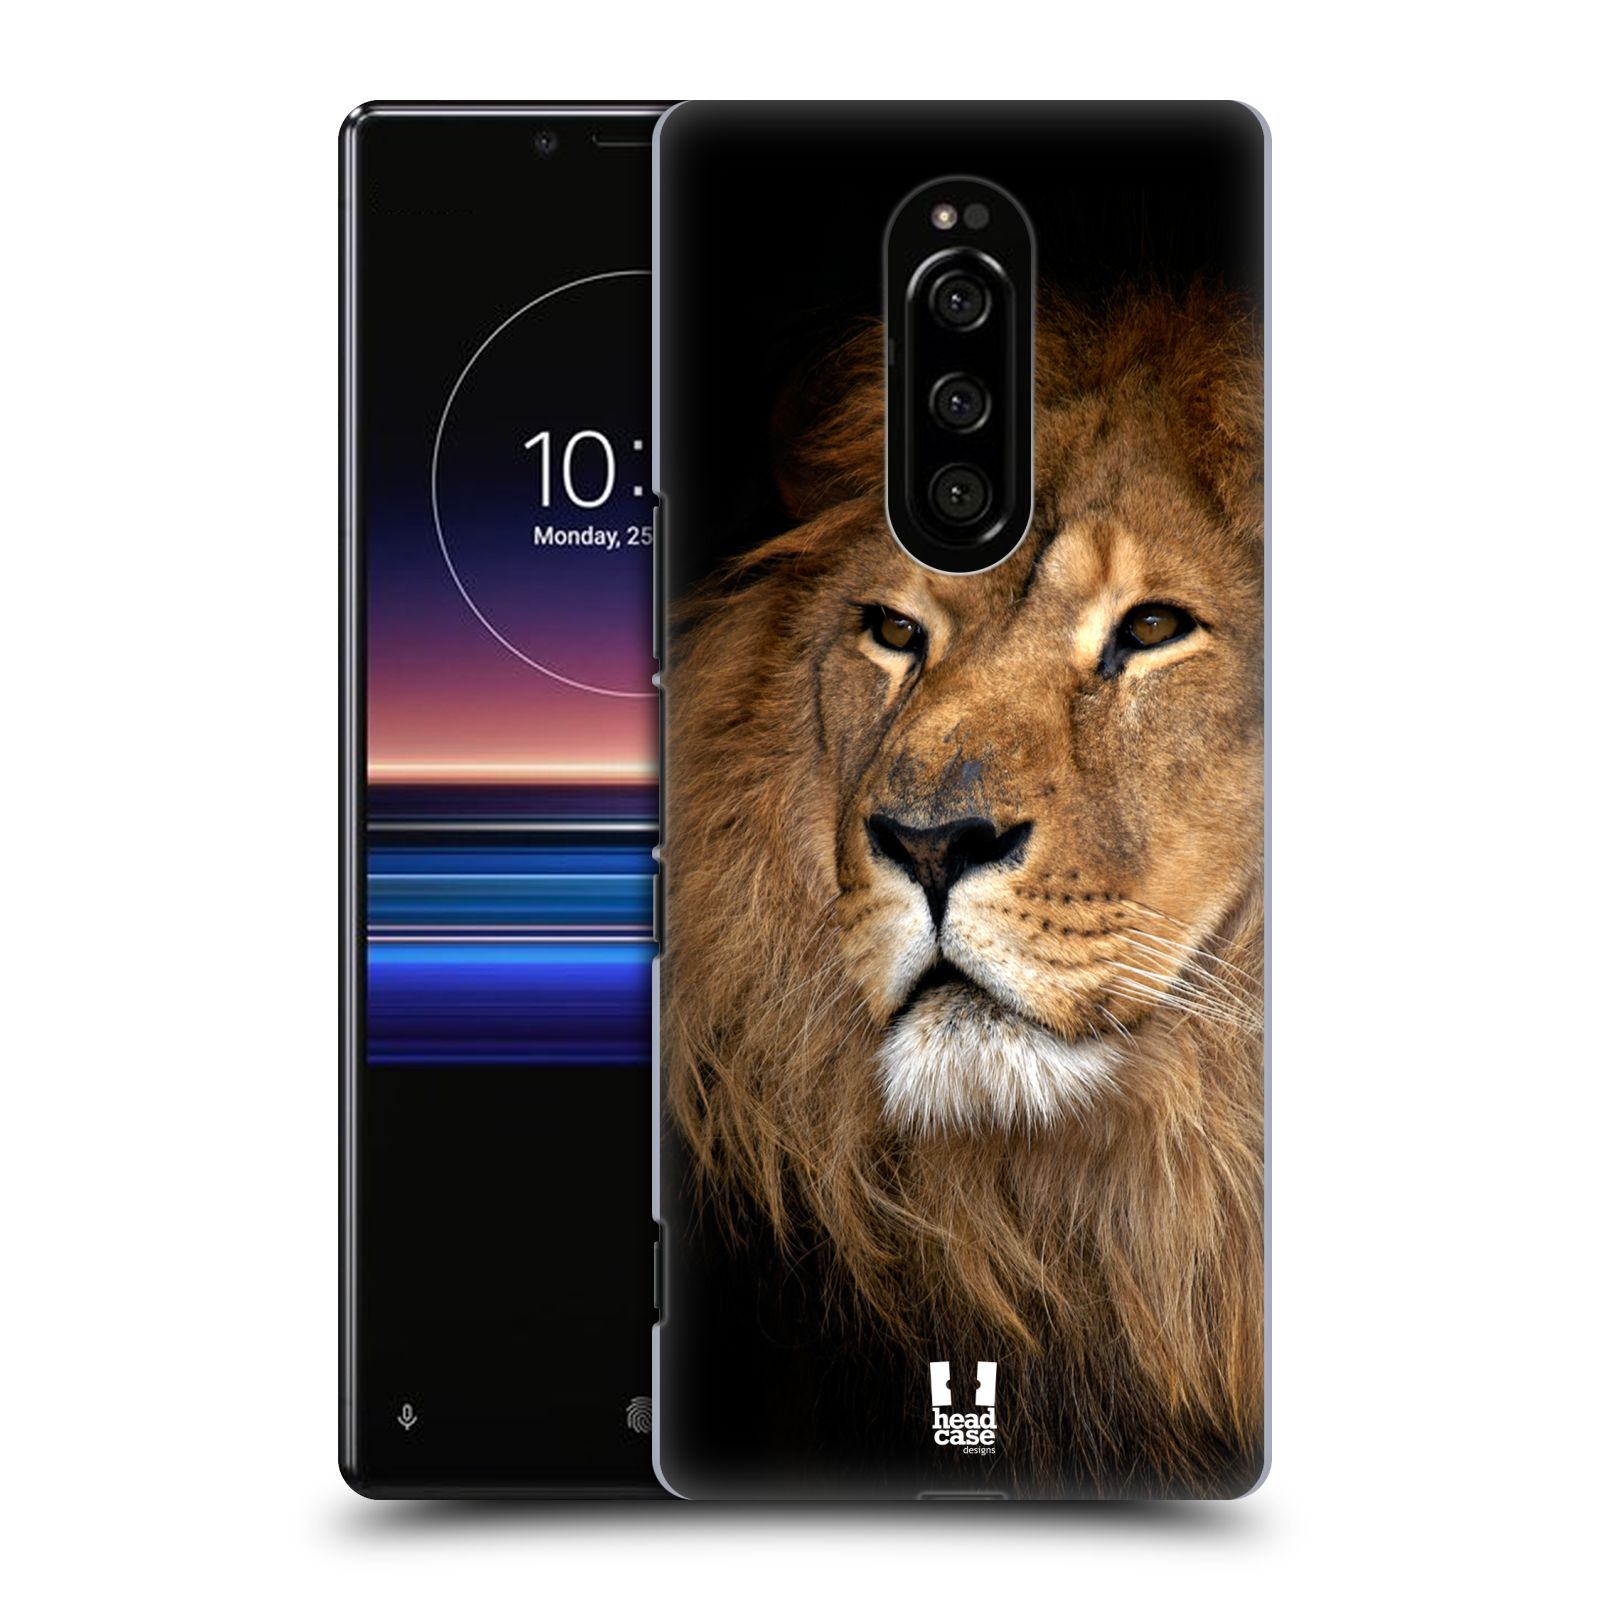 Zadní obal pro mobil Sony Xperia 1 - HEAD CASE - Svět zvířat král zvířat Lev